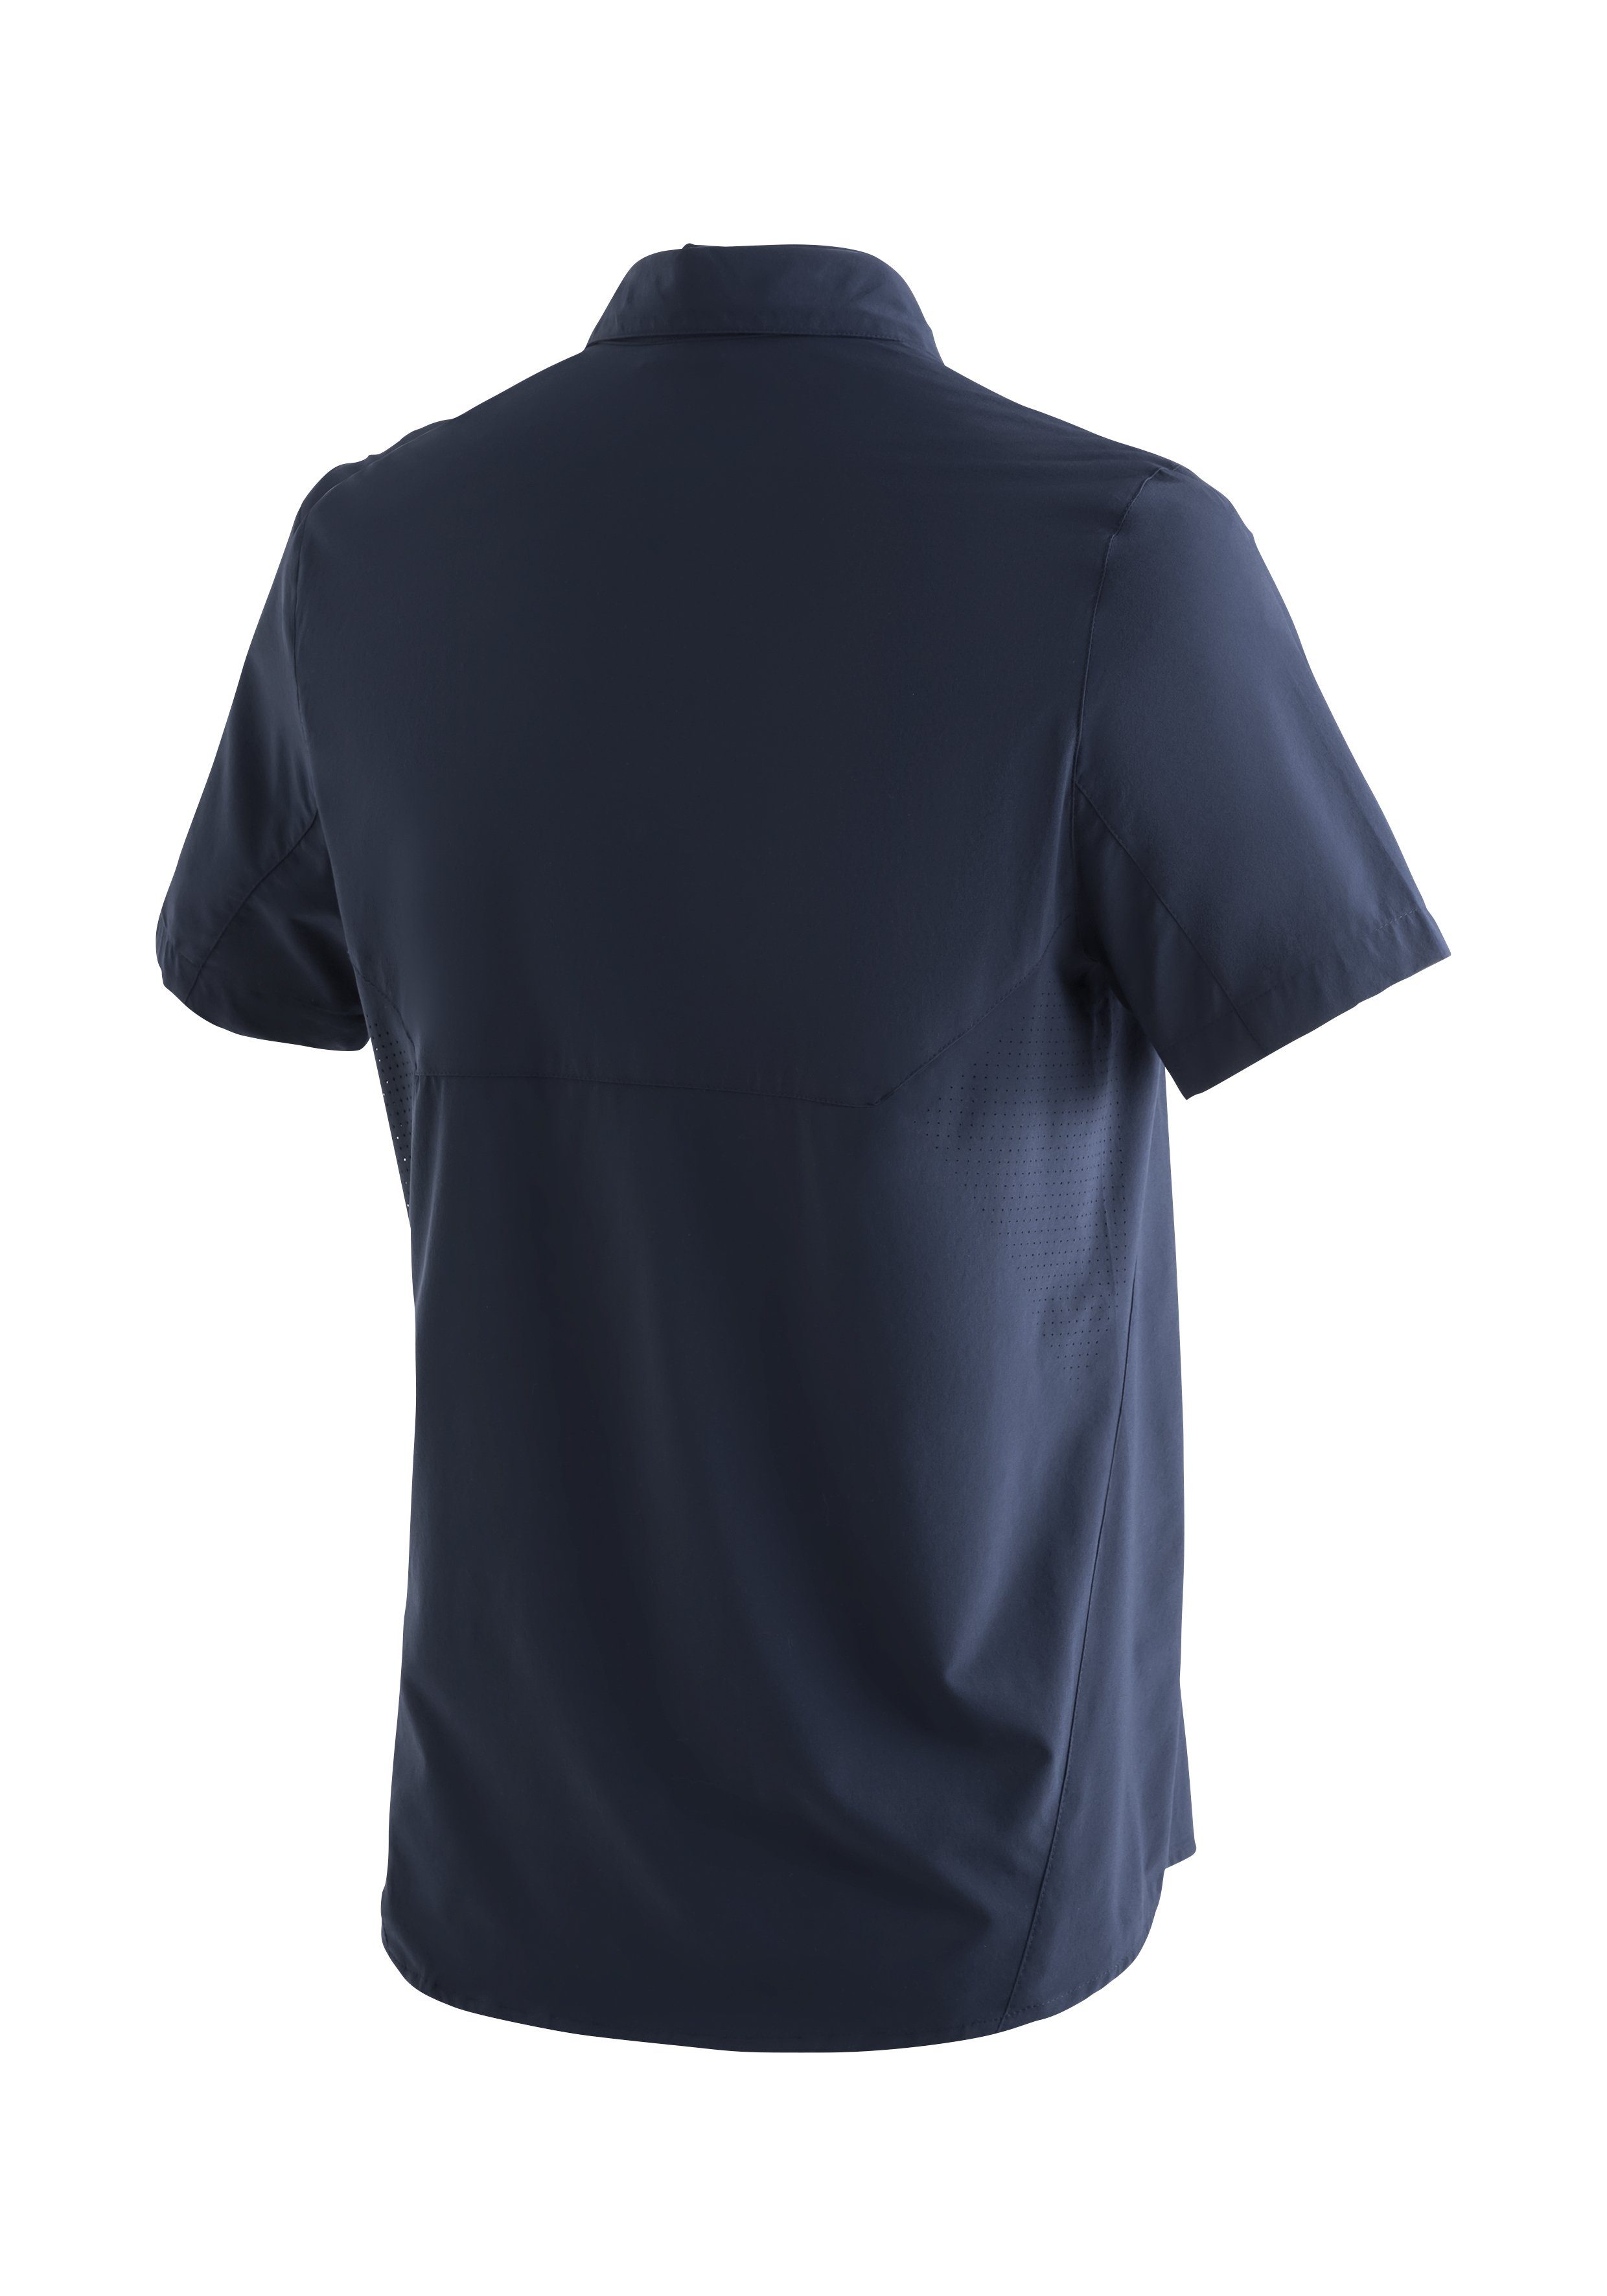 Sinnes Sports MS/S Funktionshemd Maier Trekkinghemd mit elastisches Tec Leichtes, Sonnenkragen dunkelblau